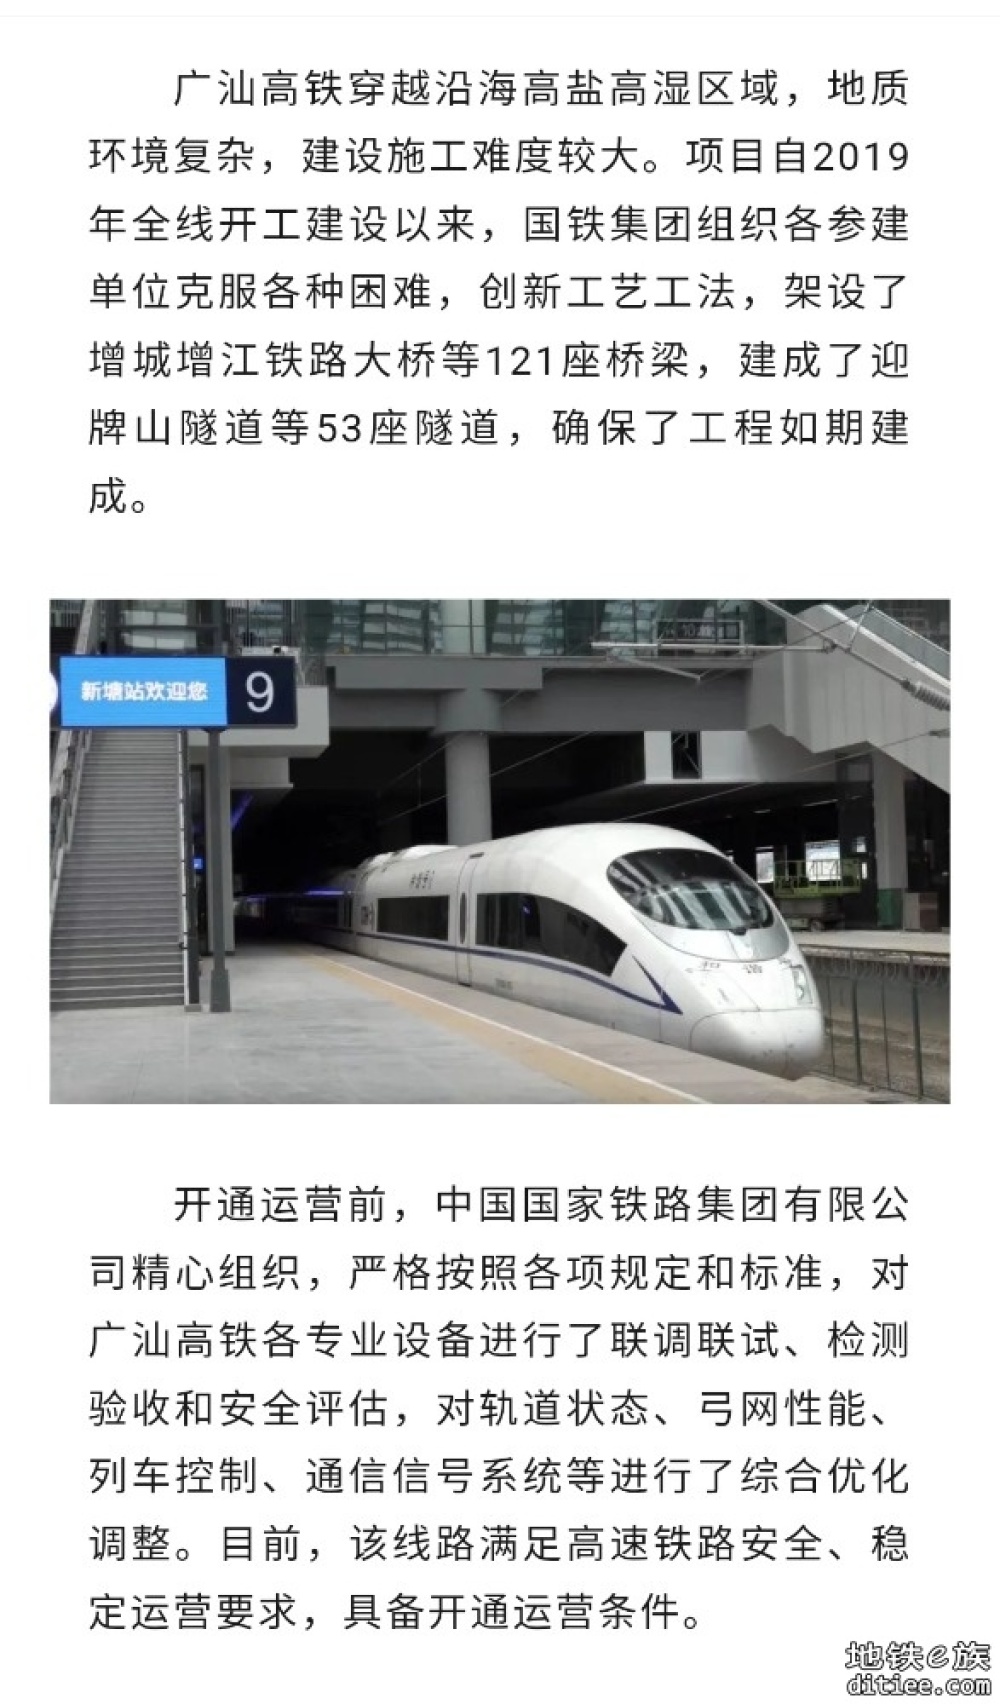 9月26日广汕高铁开通运营